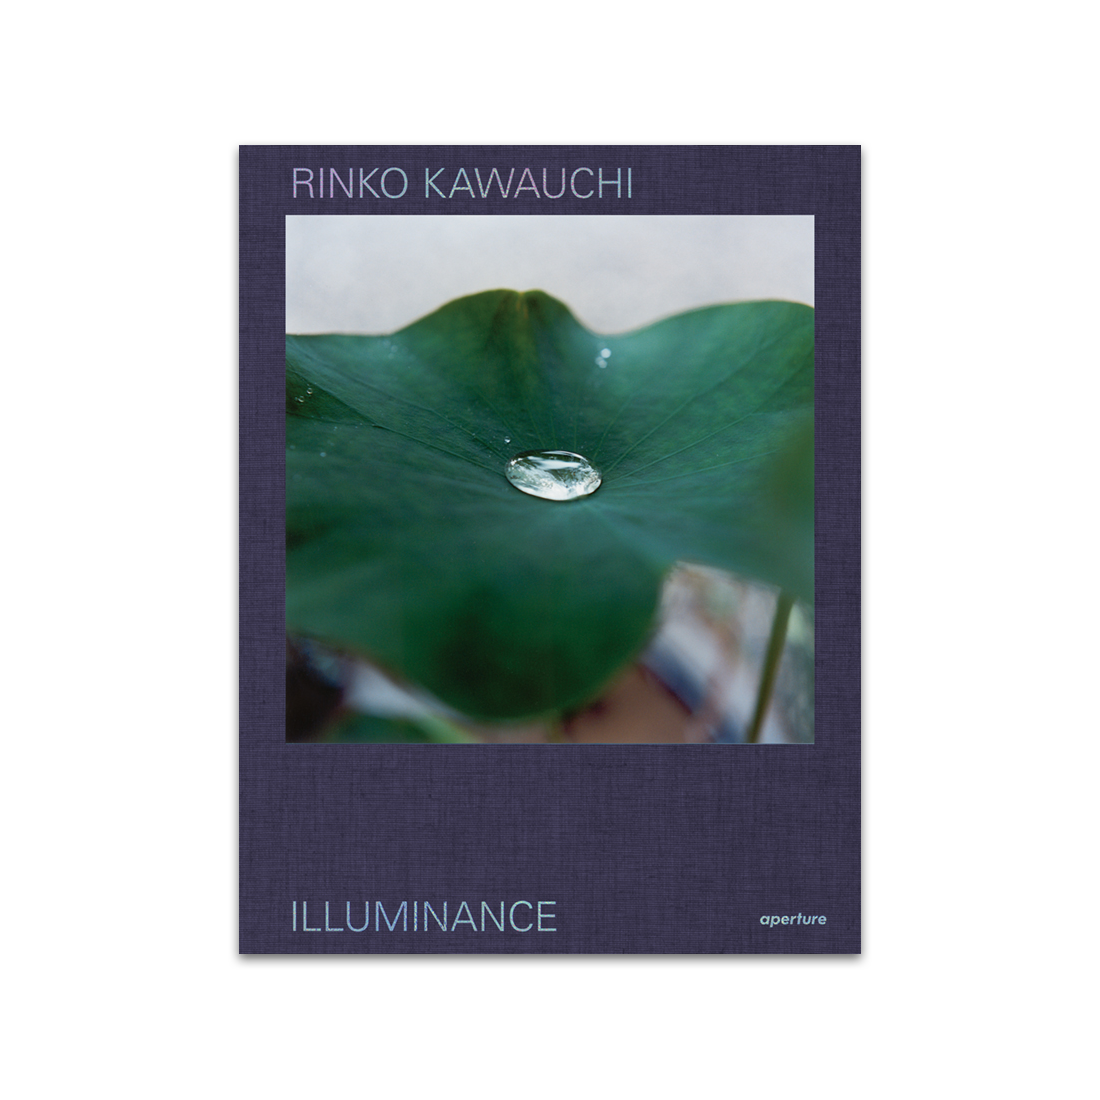 Rinko Kawauchi: Illuminance - The Tenth Anniversary Edition